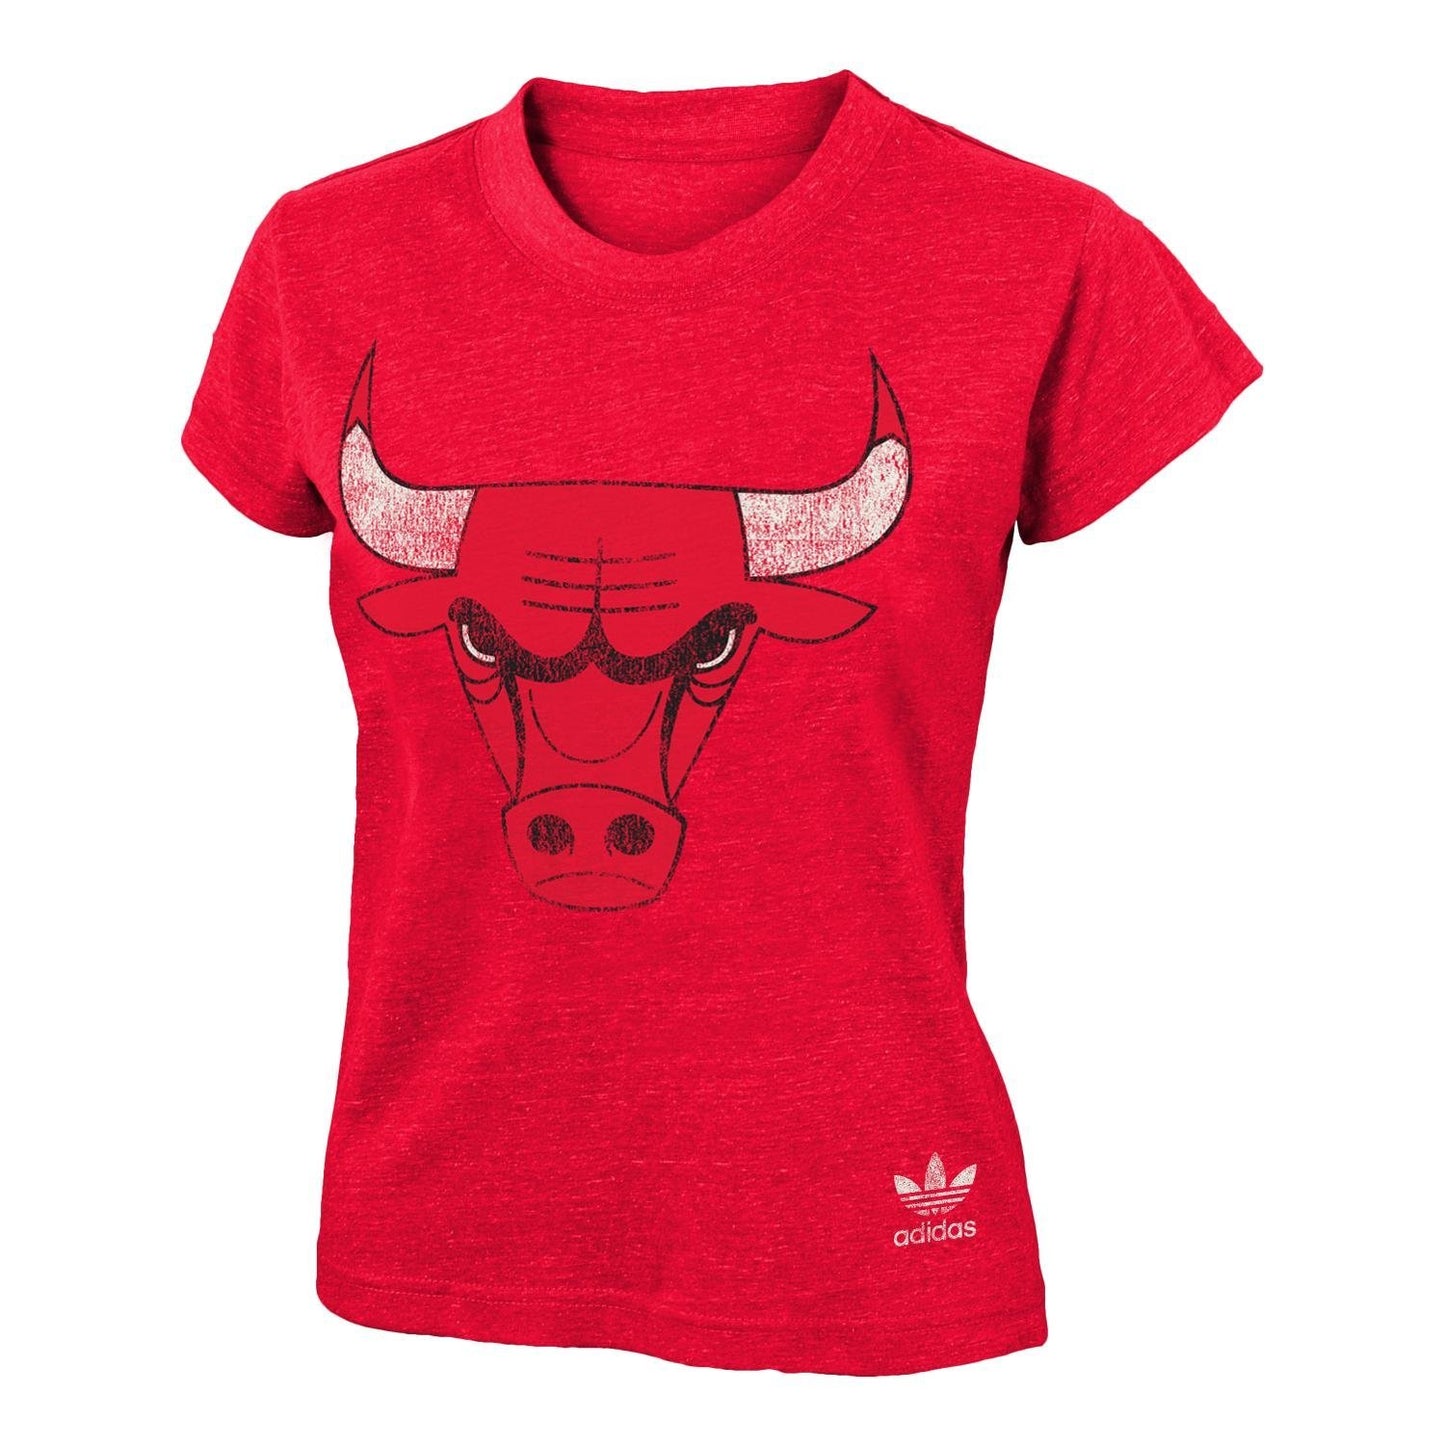 Girls Chicago Bulls Youth Tri-Blend T-Shirt